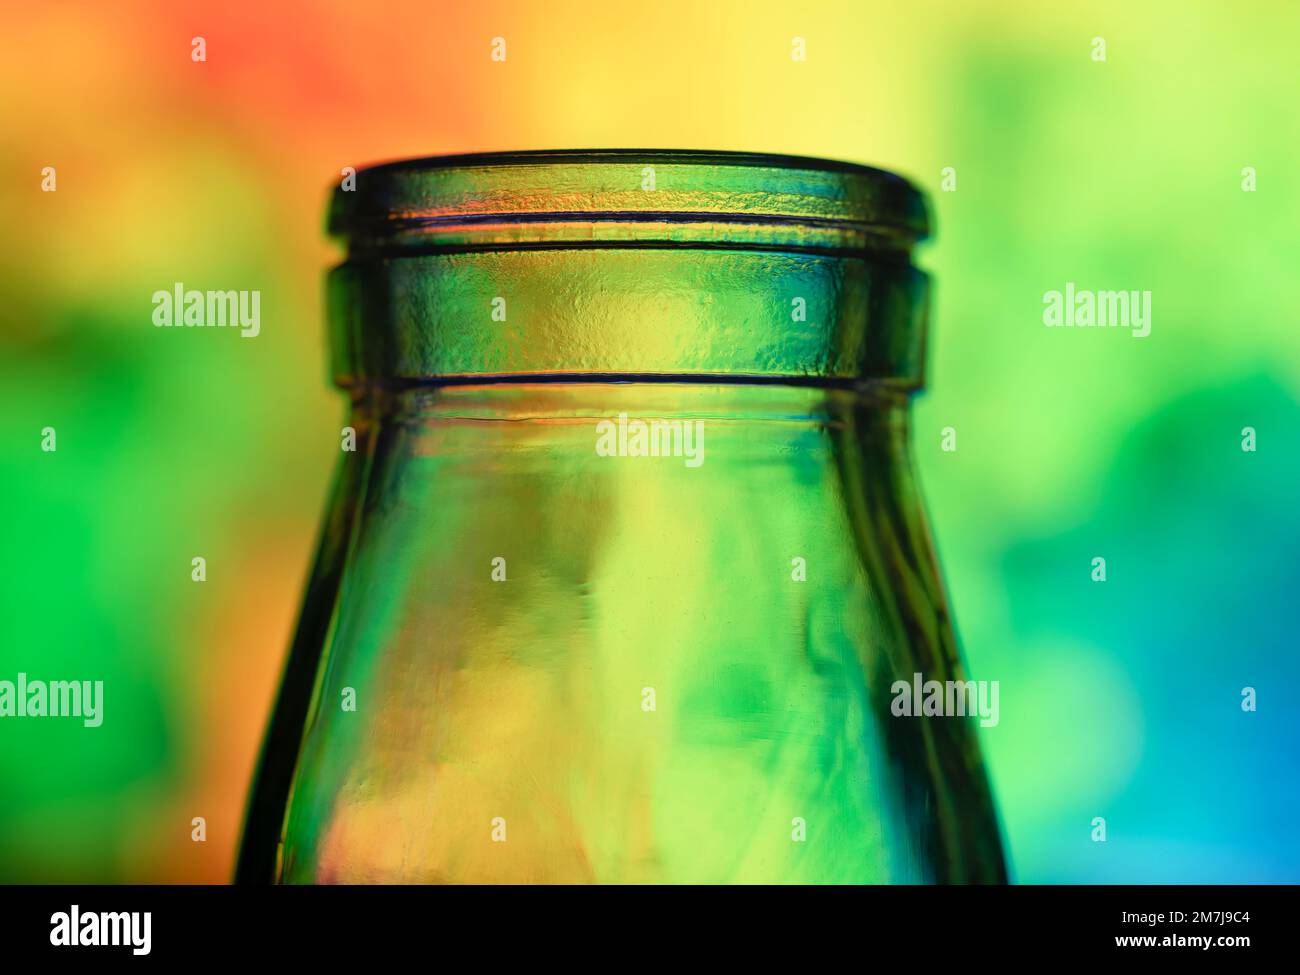 Nahaufnahme der Oberseite einer Glasflasche, fotografiert vor einem mehrfarbigen Hintergrund Stockfoto